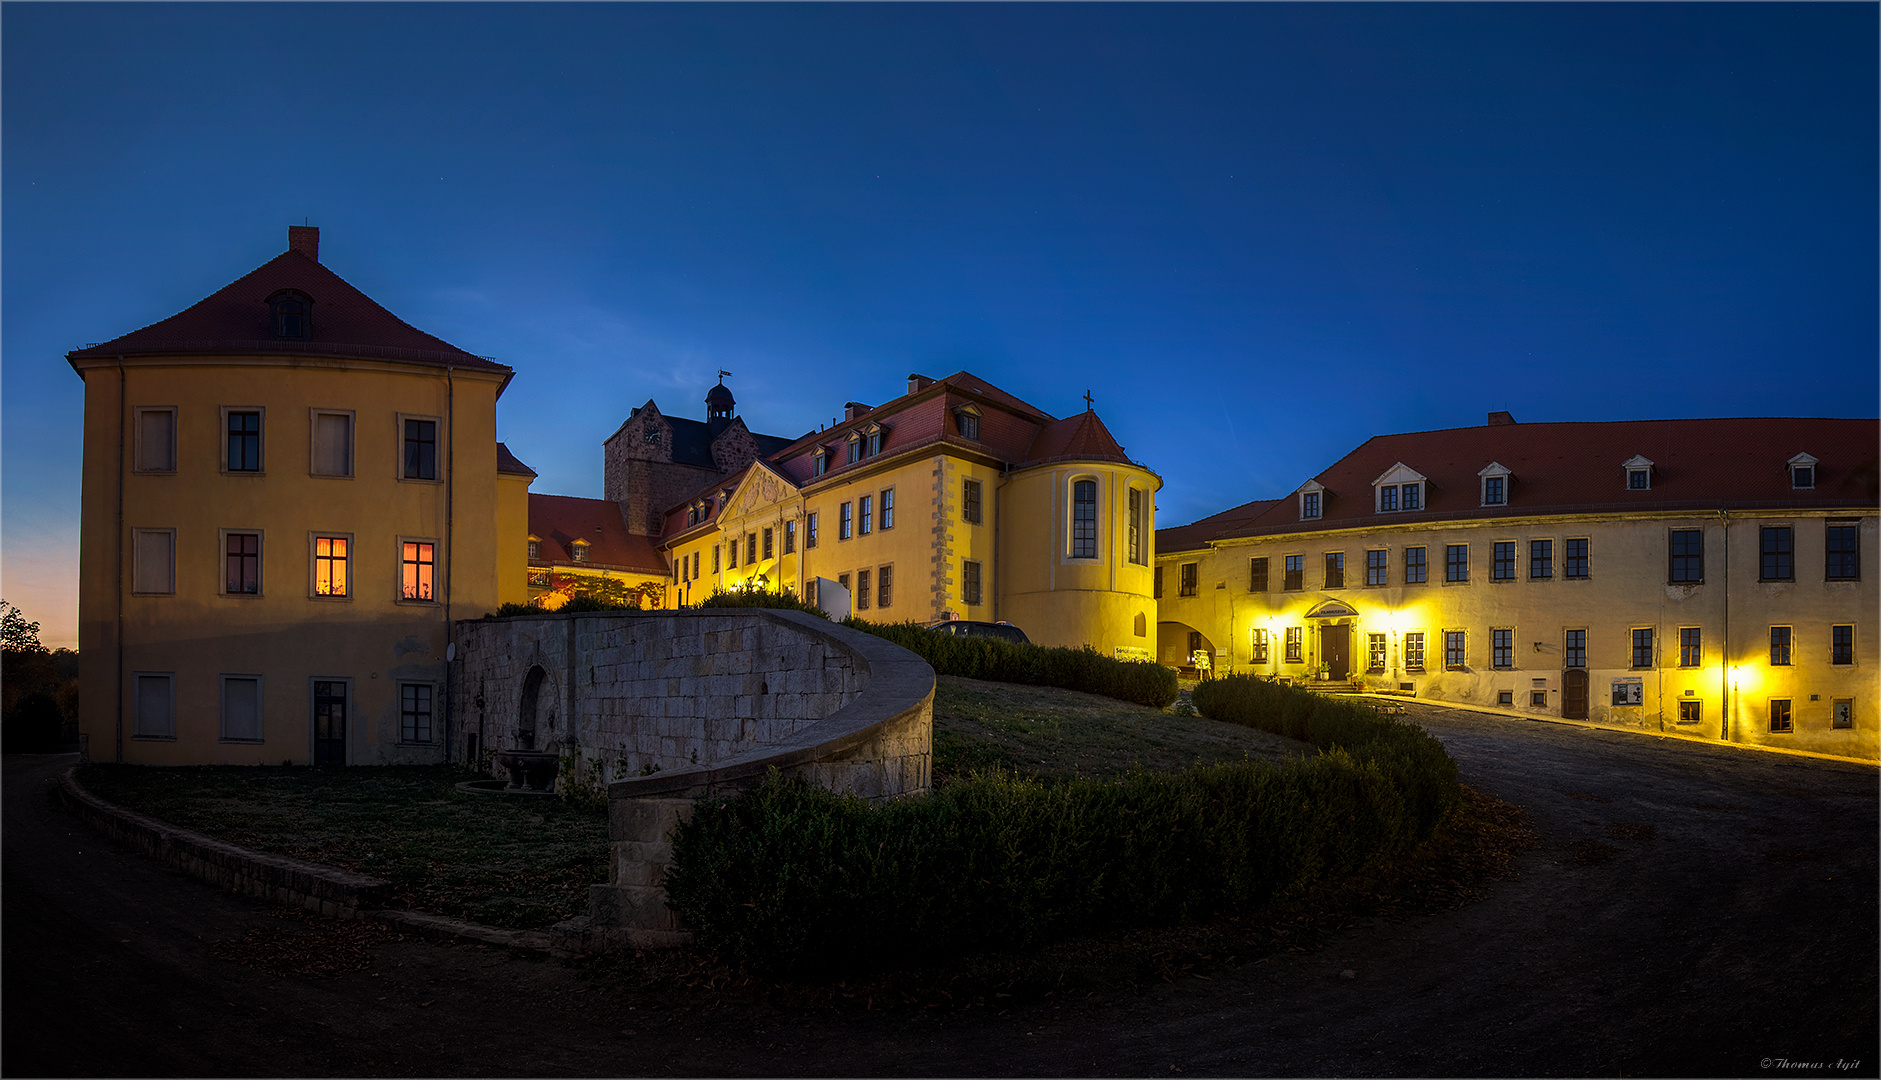 Nacht am Ballenstedter Schloss